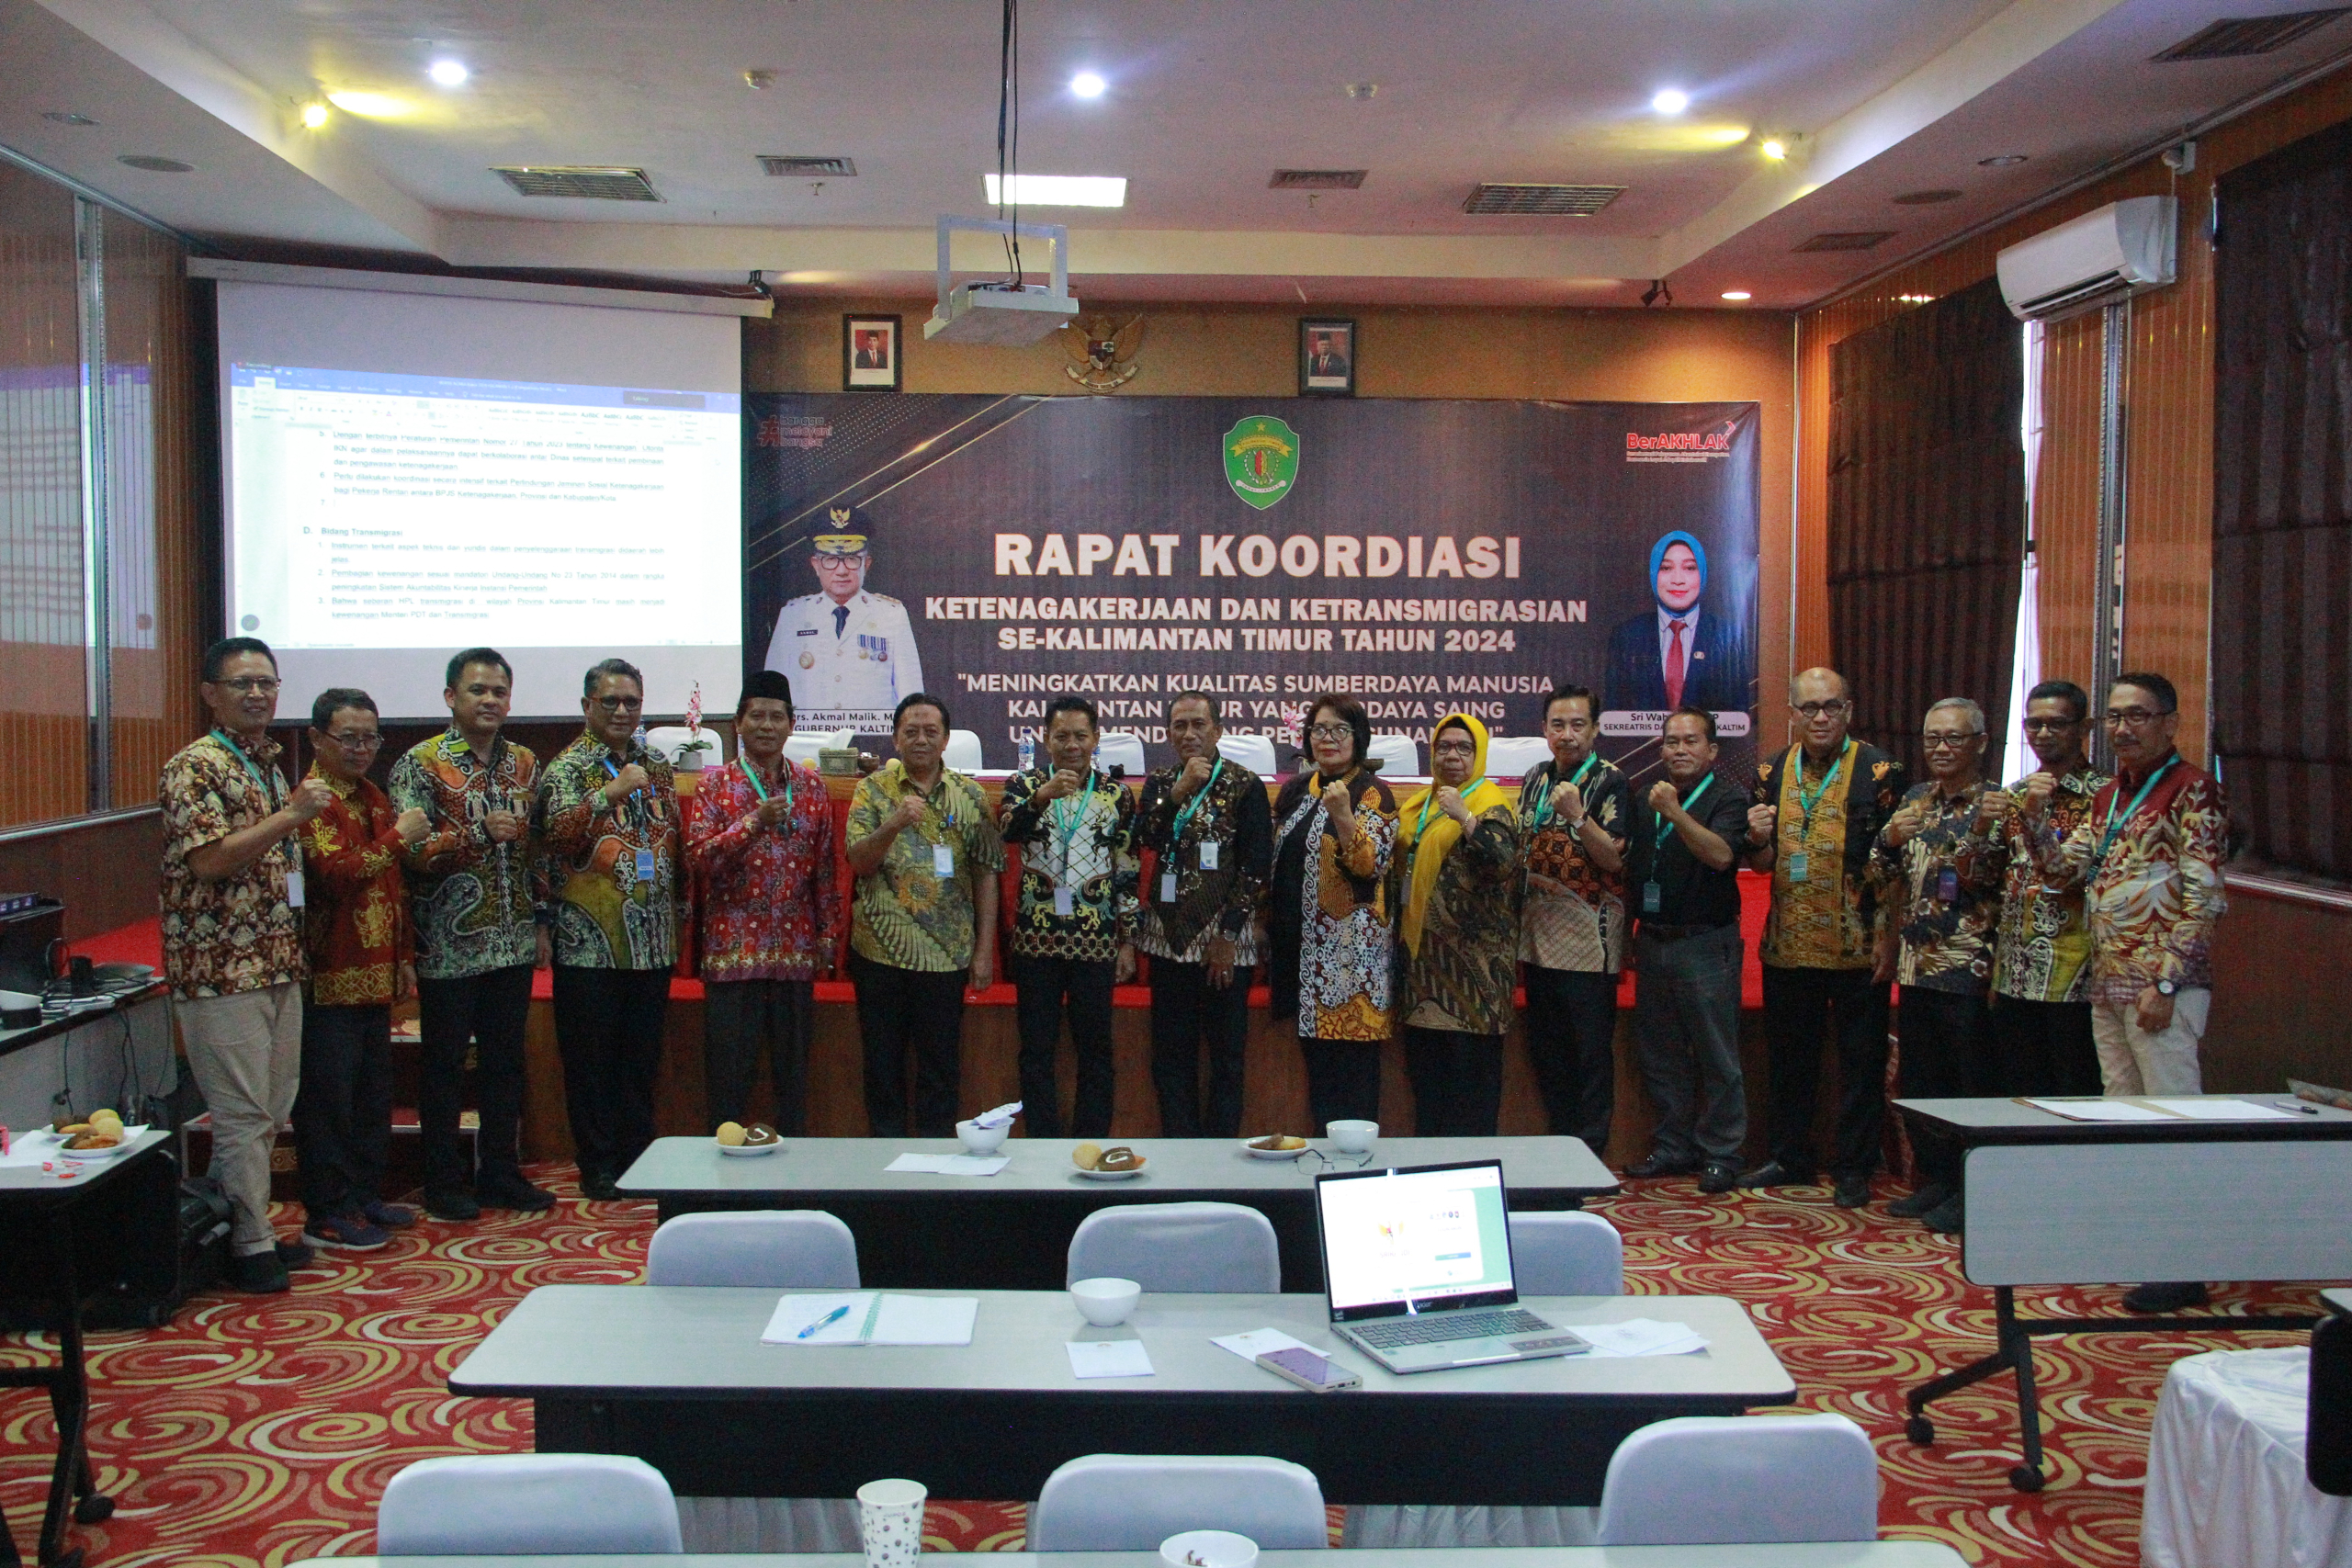 Panel dan Diskusi Rapat Koordinasi Ketenagakerjaan dan Ketransmigrasian Se-Kalimantan Timur Tahun 2024